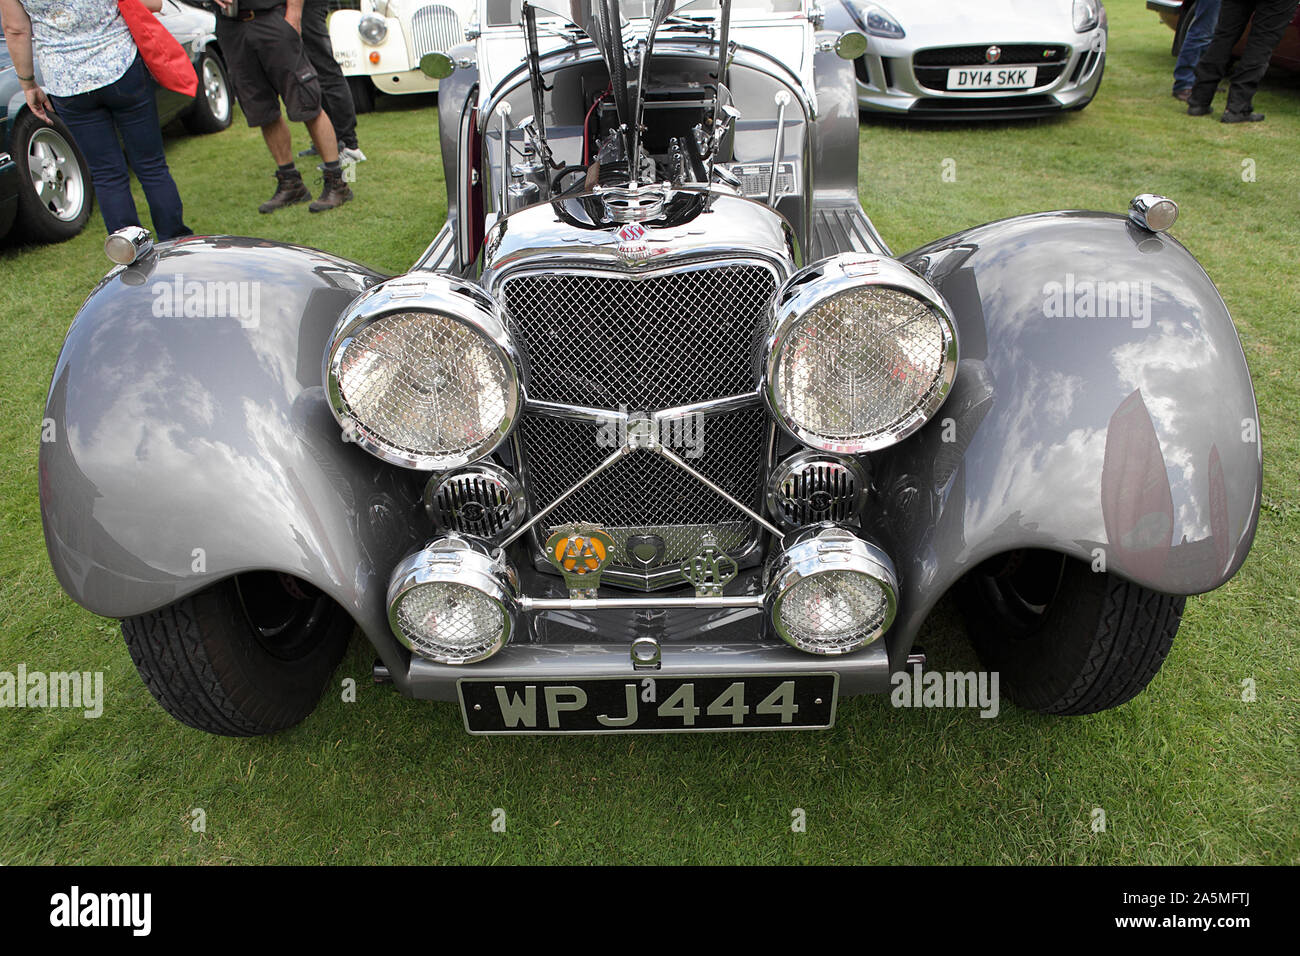 Vu ici, c'est un Jaguar SS kit car (1 de 5 images), exposées à un rallye de voitures anciennes dans le Shropshire, en Angleterre. Banque D'Images